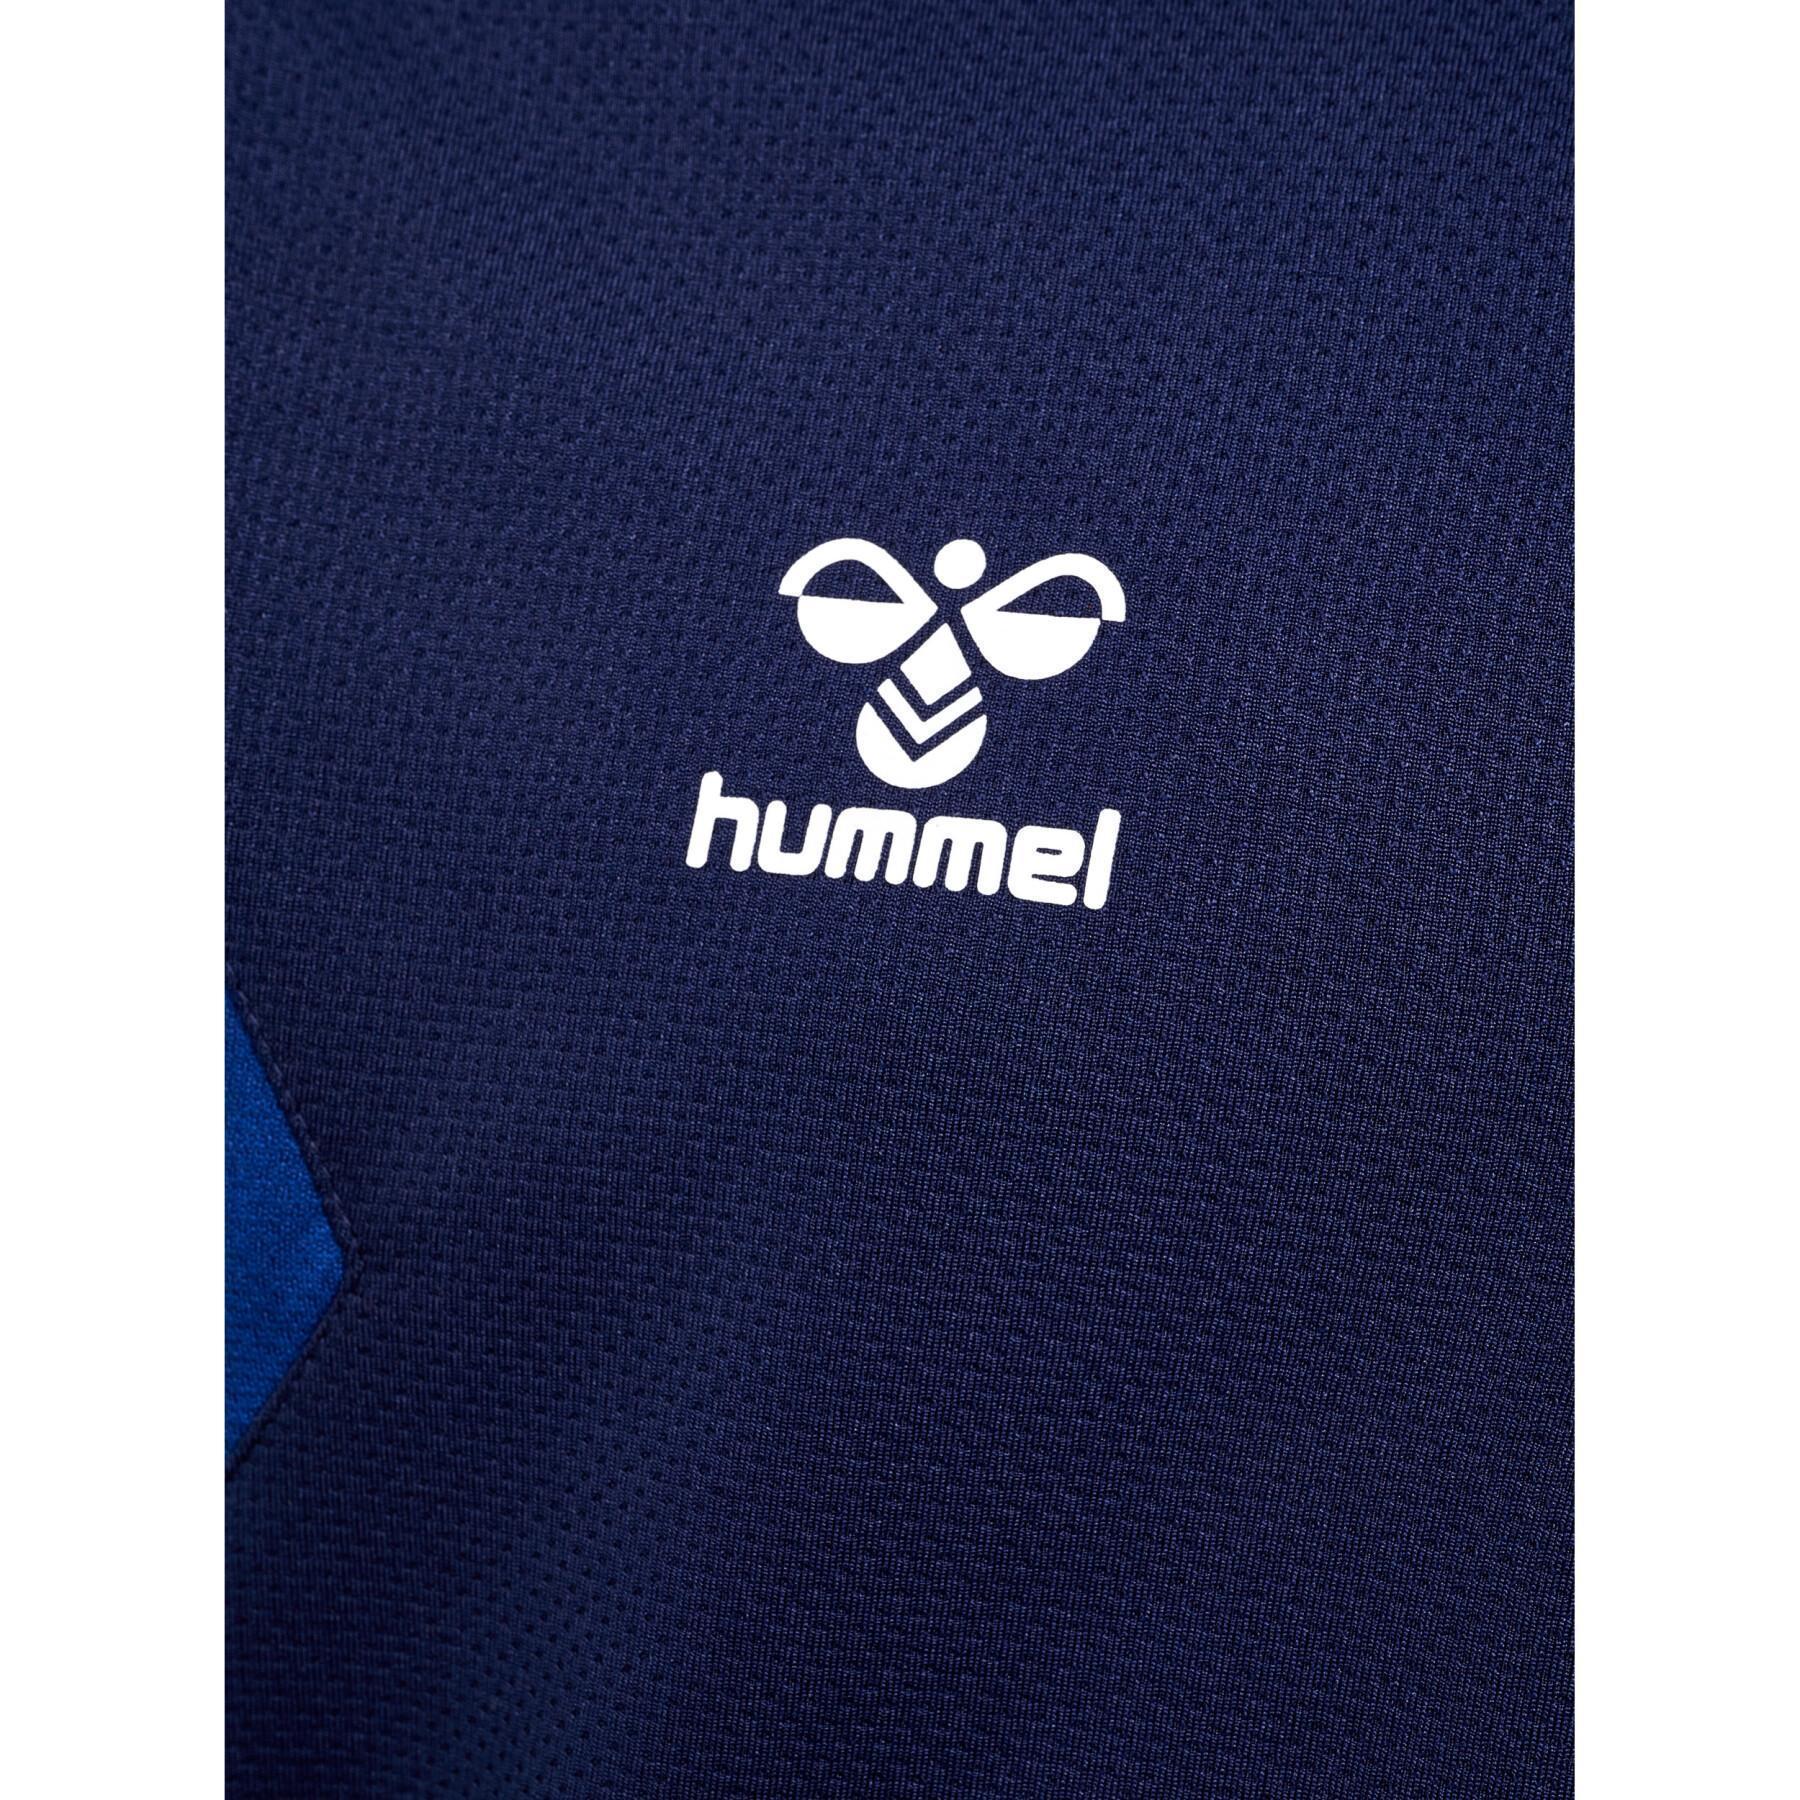 Kinder trainingspak Hummel Authentic half